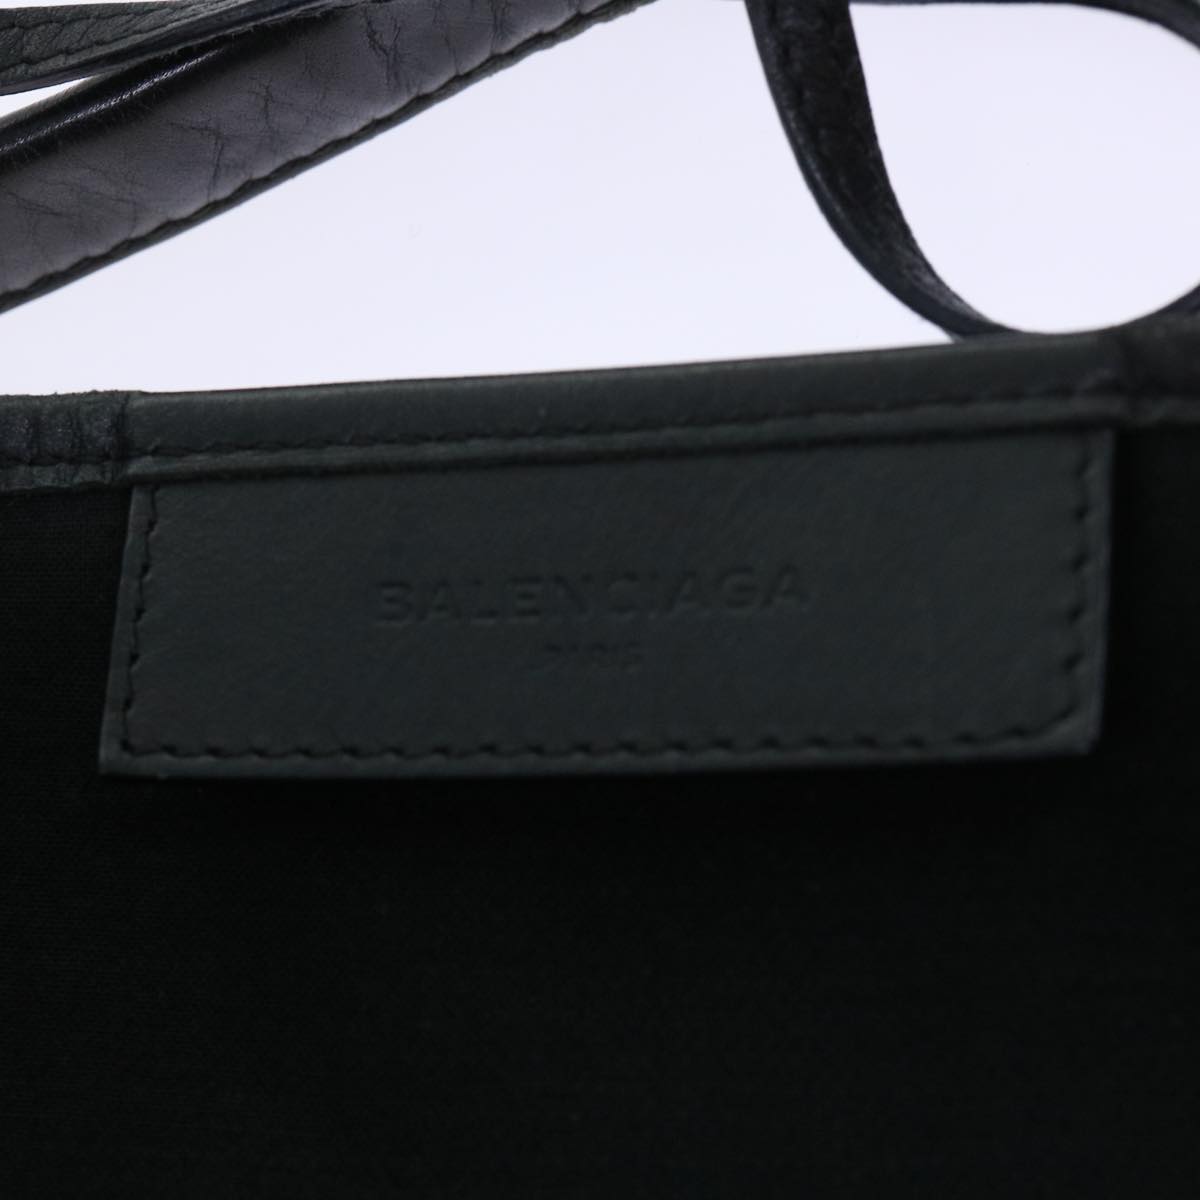 BALENCIAGA Tote Bag Canvas Beige Black Auth bs7766